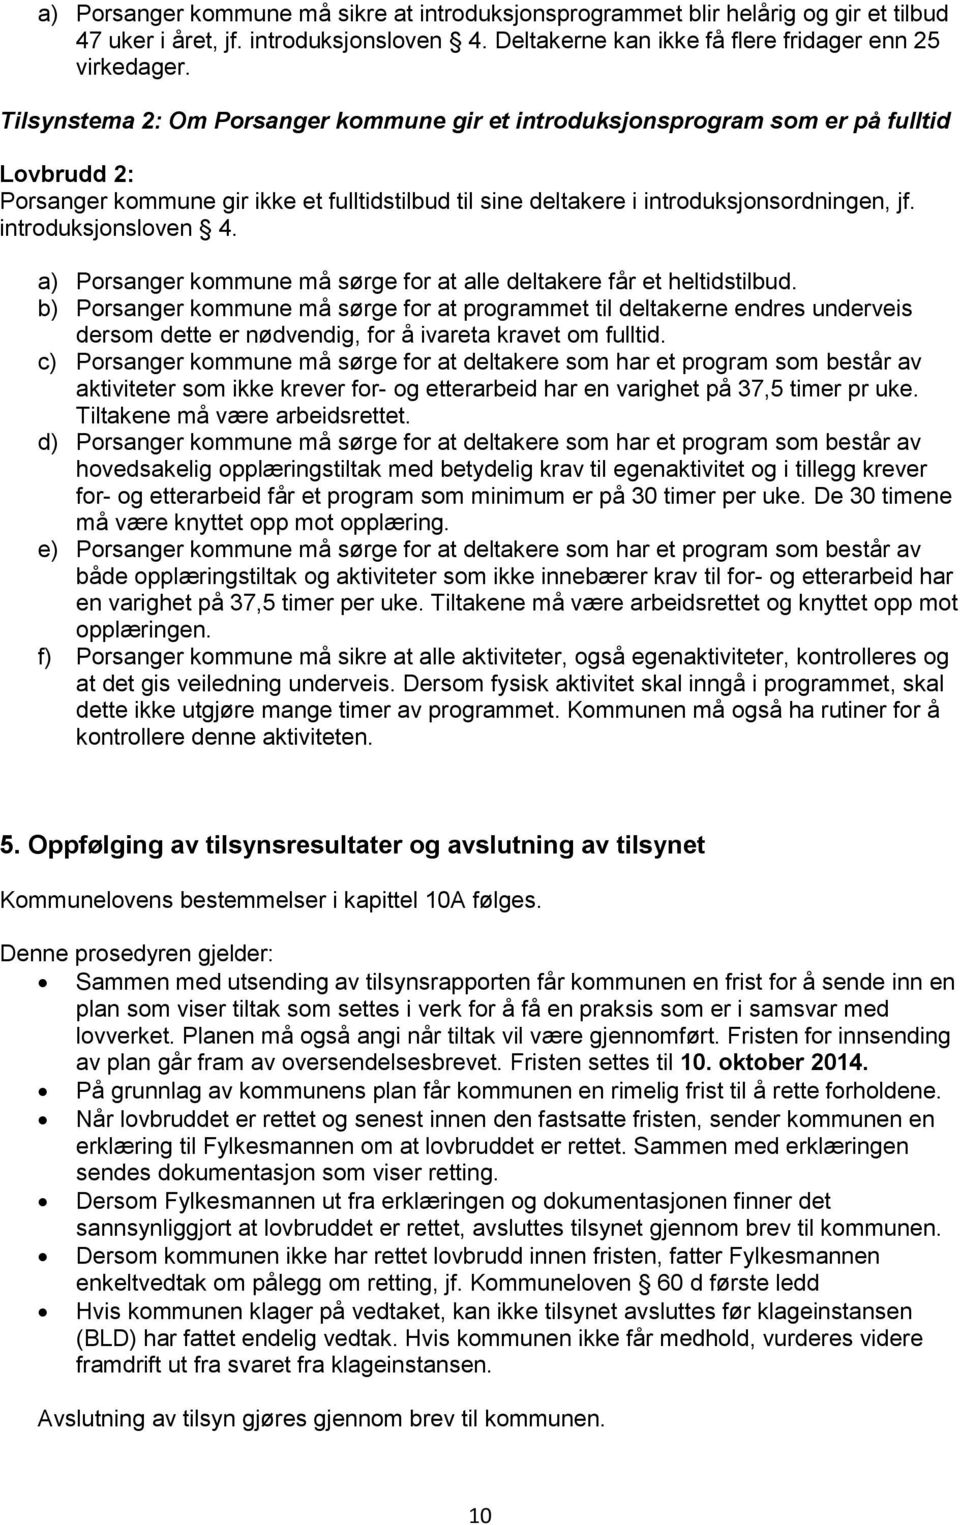 introduksjonsloven 4. a) Porsanger kommune må sørge for at alle deltakere får et heltidstilbud.